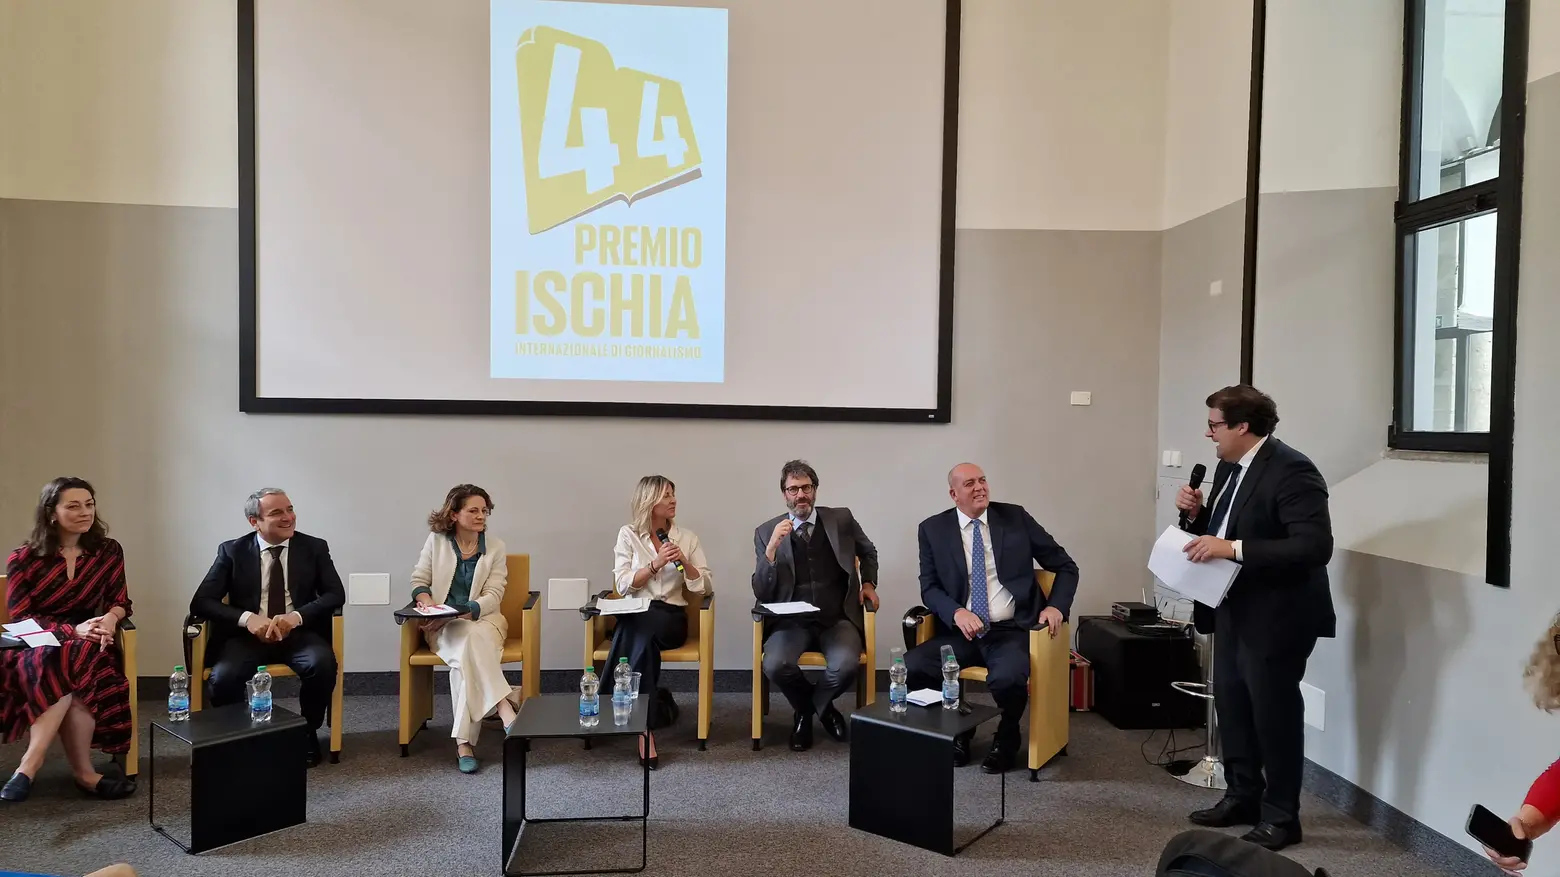 Un momento del dibattito organizzato dal Premio Ischia a Palazzo delle Stelline